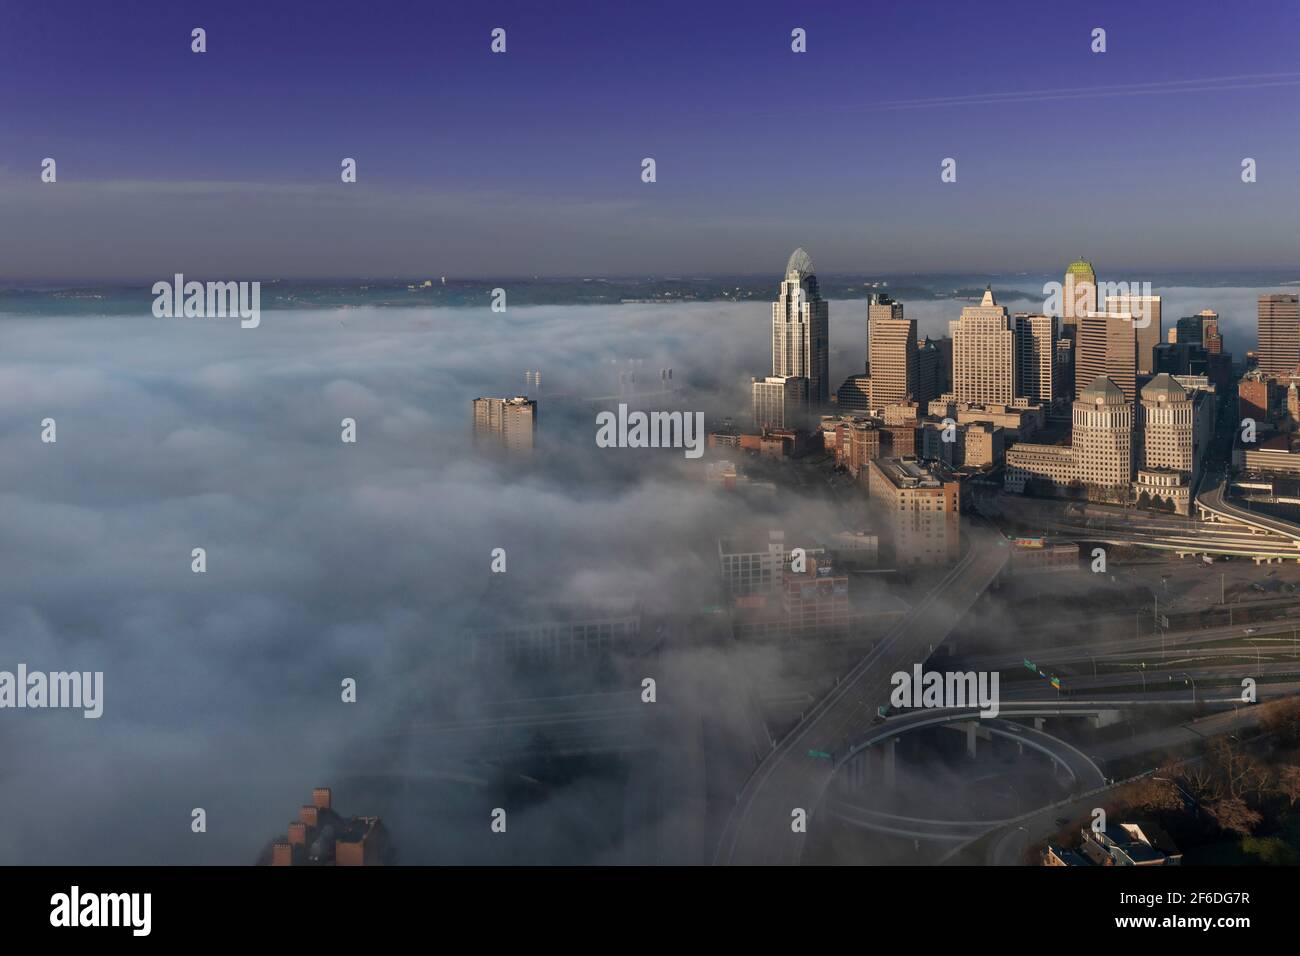 La nebbia della mattina presto coperte il fiume Ohio sopra il centro di Cincinnati E Kentucky, mentre il sole illumina gli edifici e i ponti attraverso le nuvole della nebbia Foto Stock